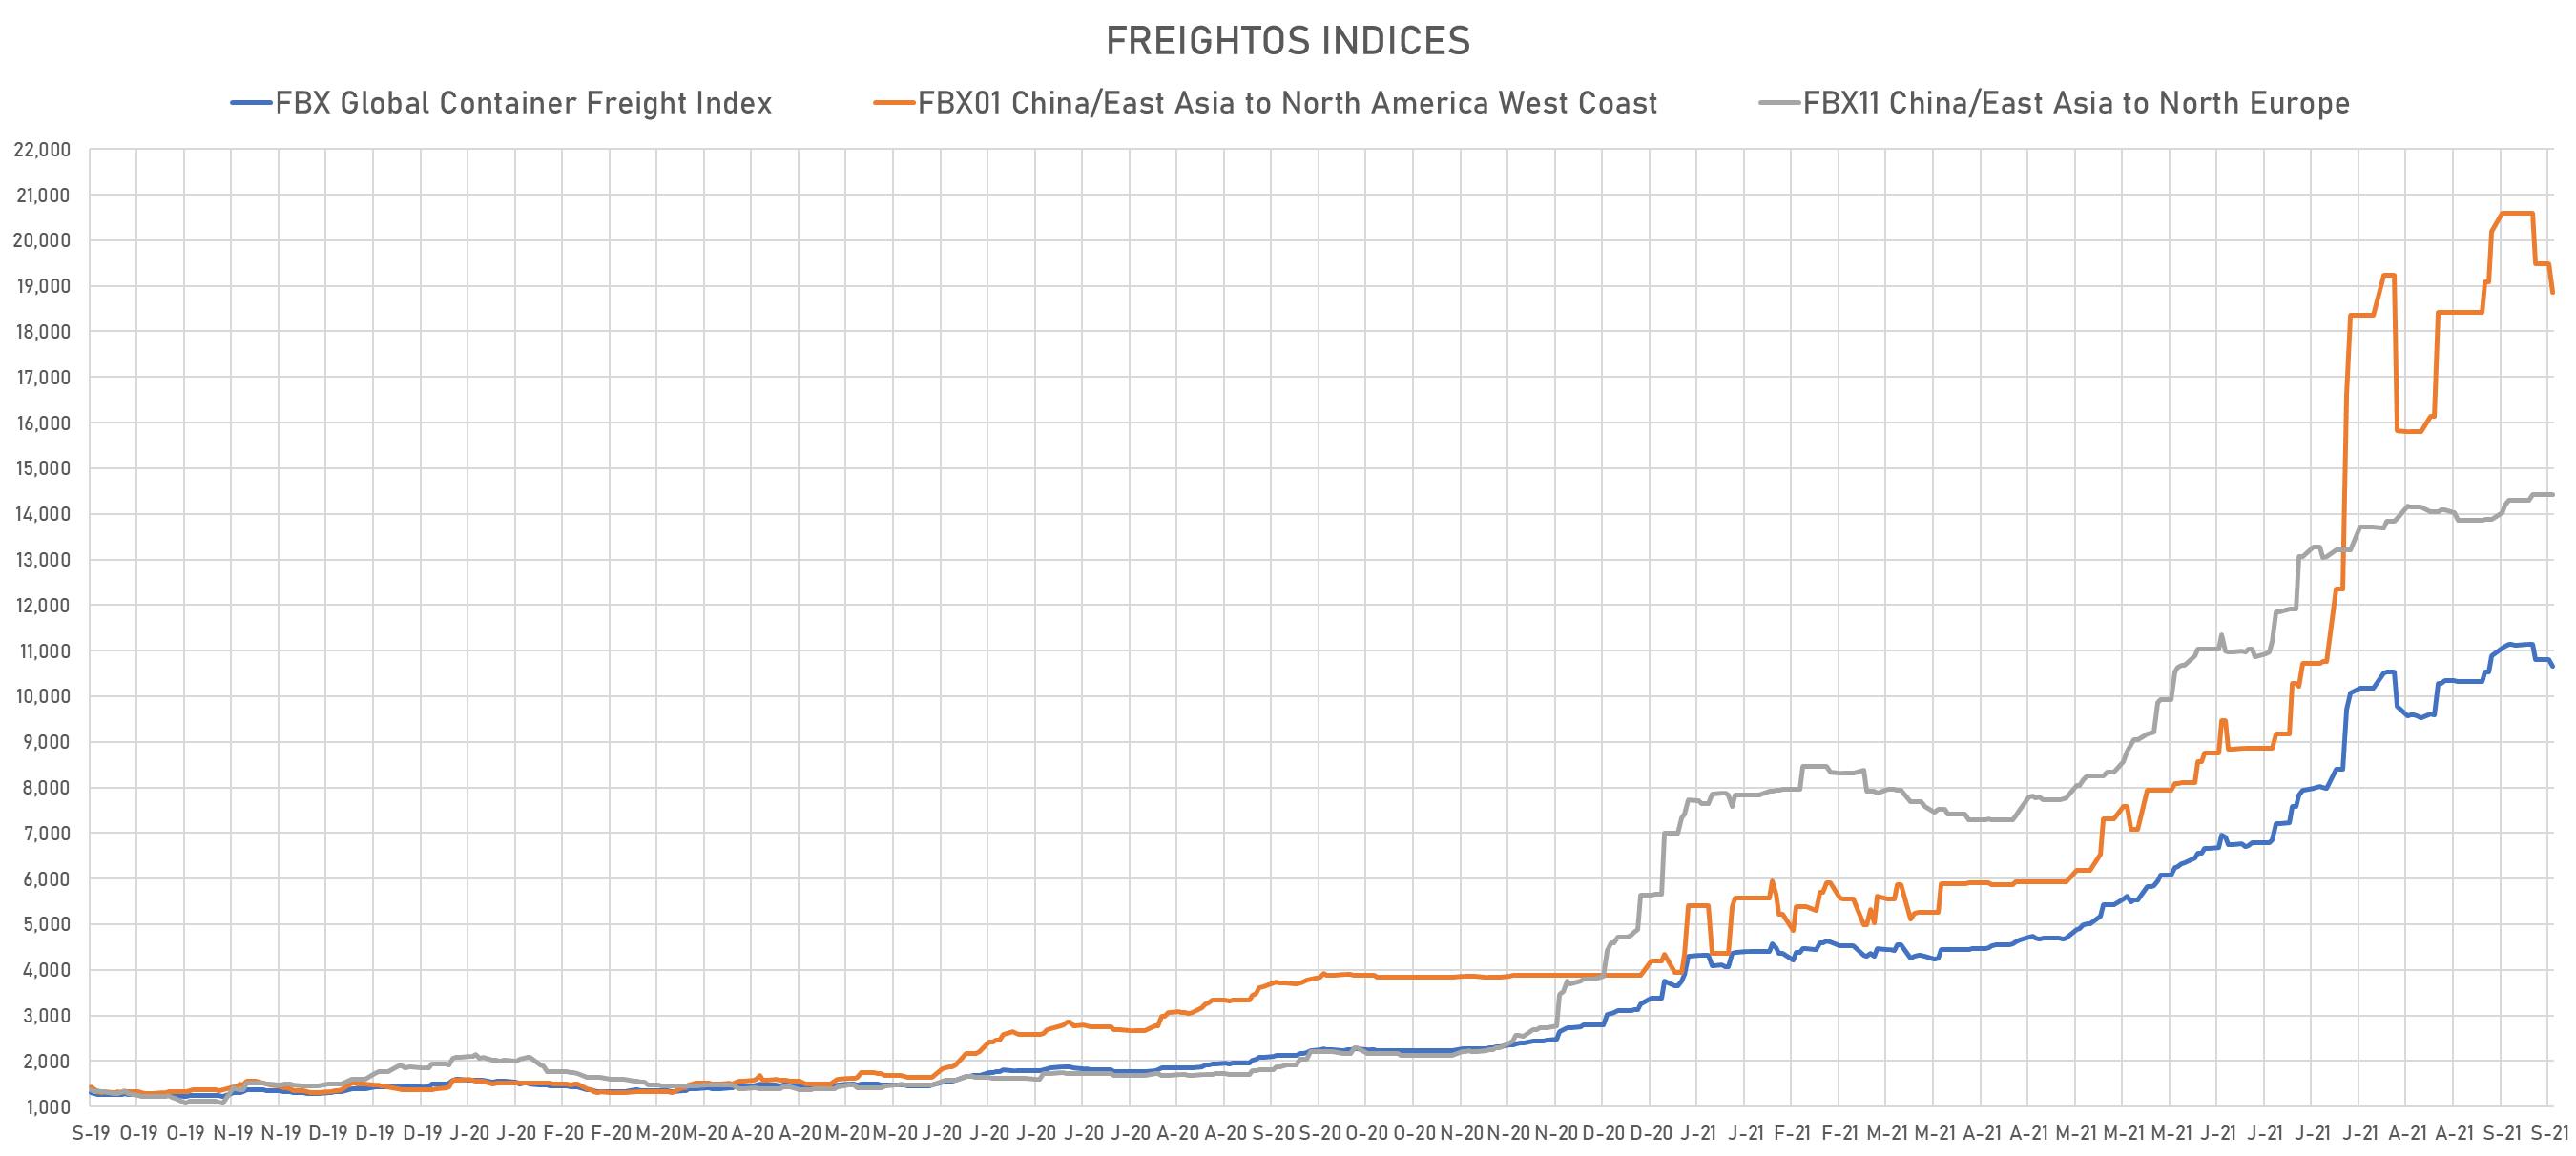 Freightos Indices | Sources: phipost.com, Freightos data